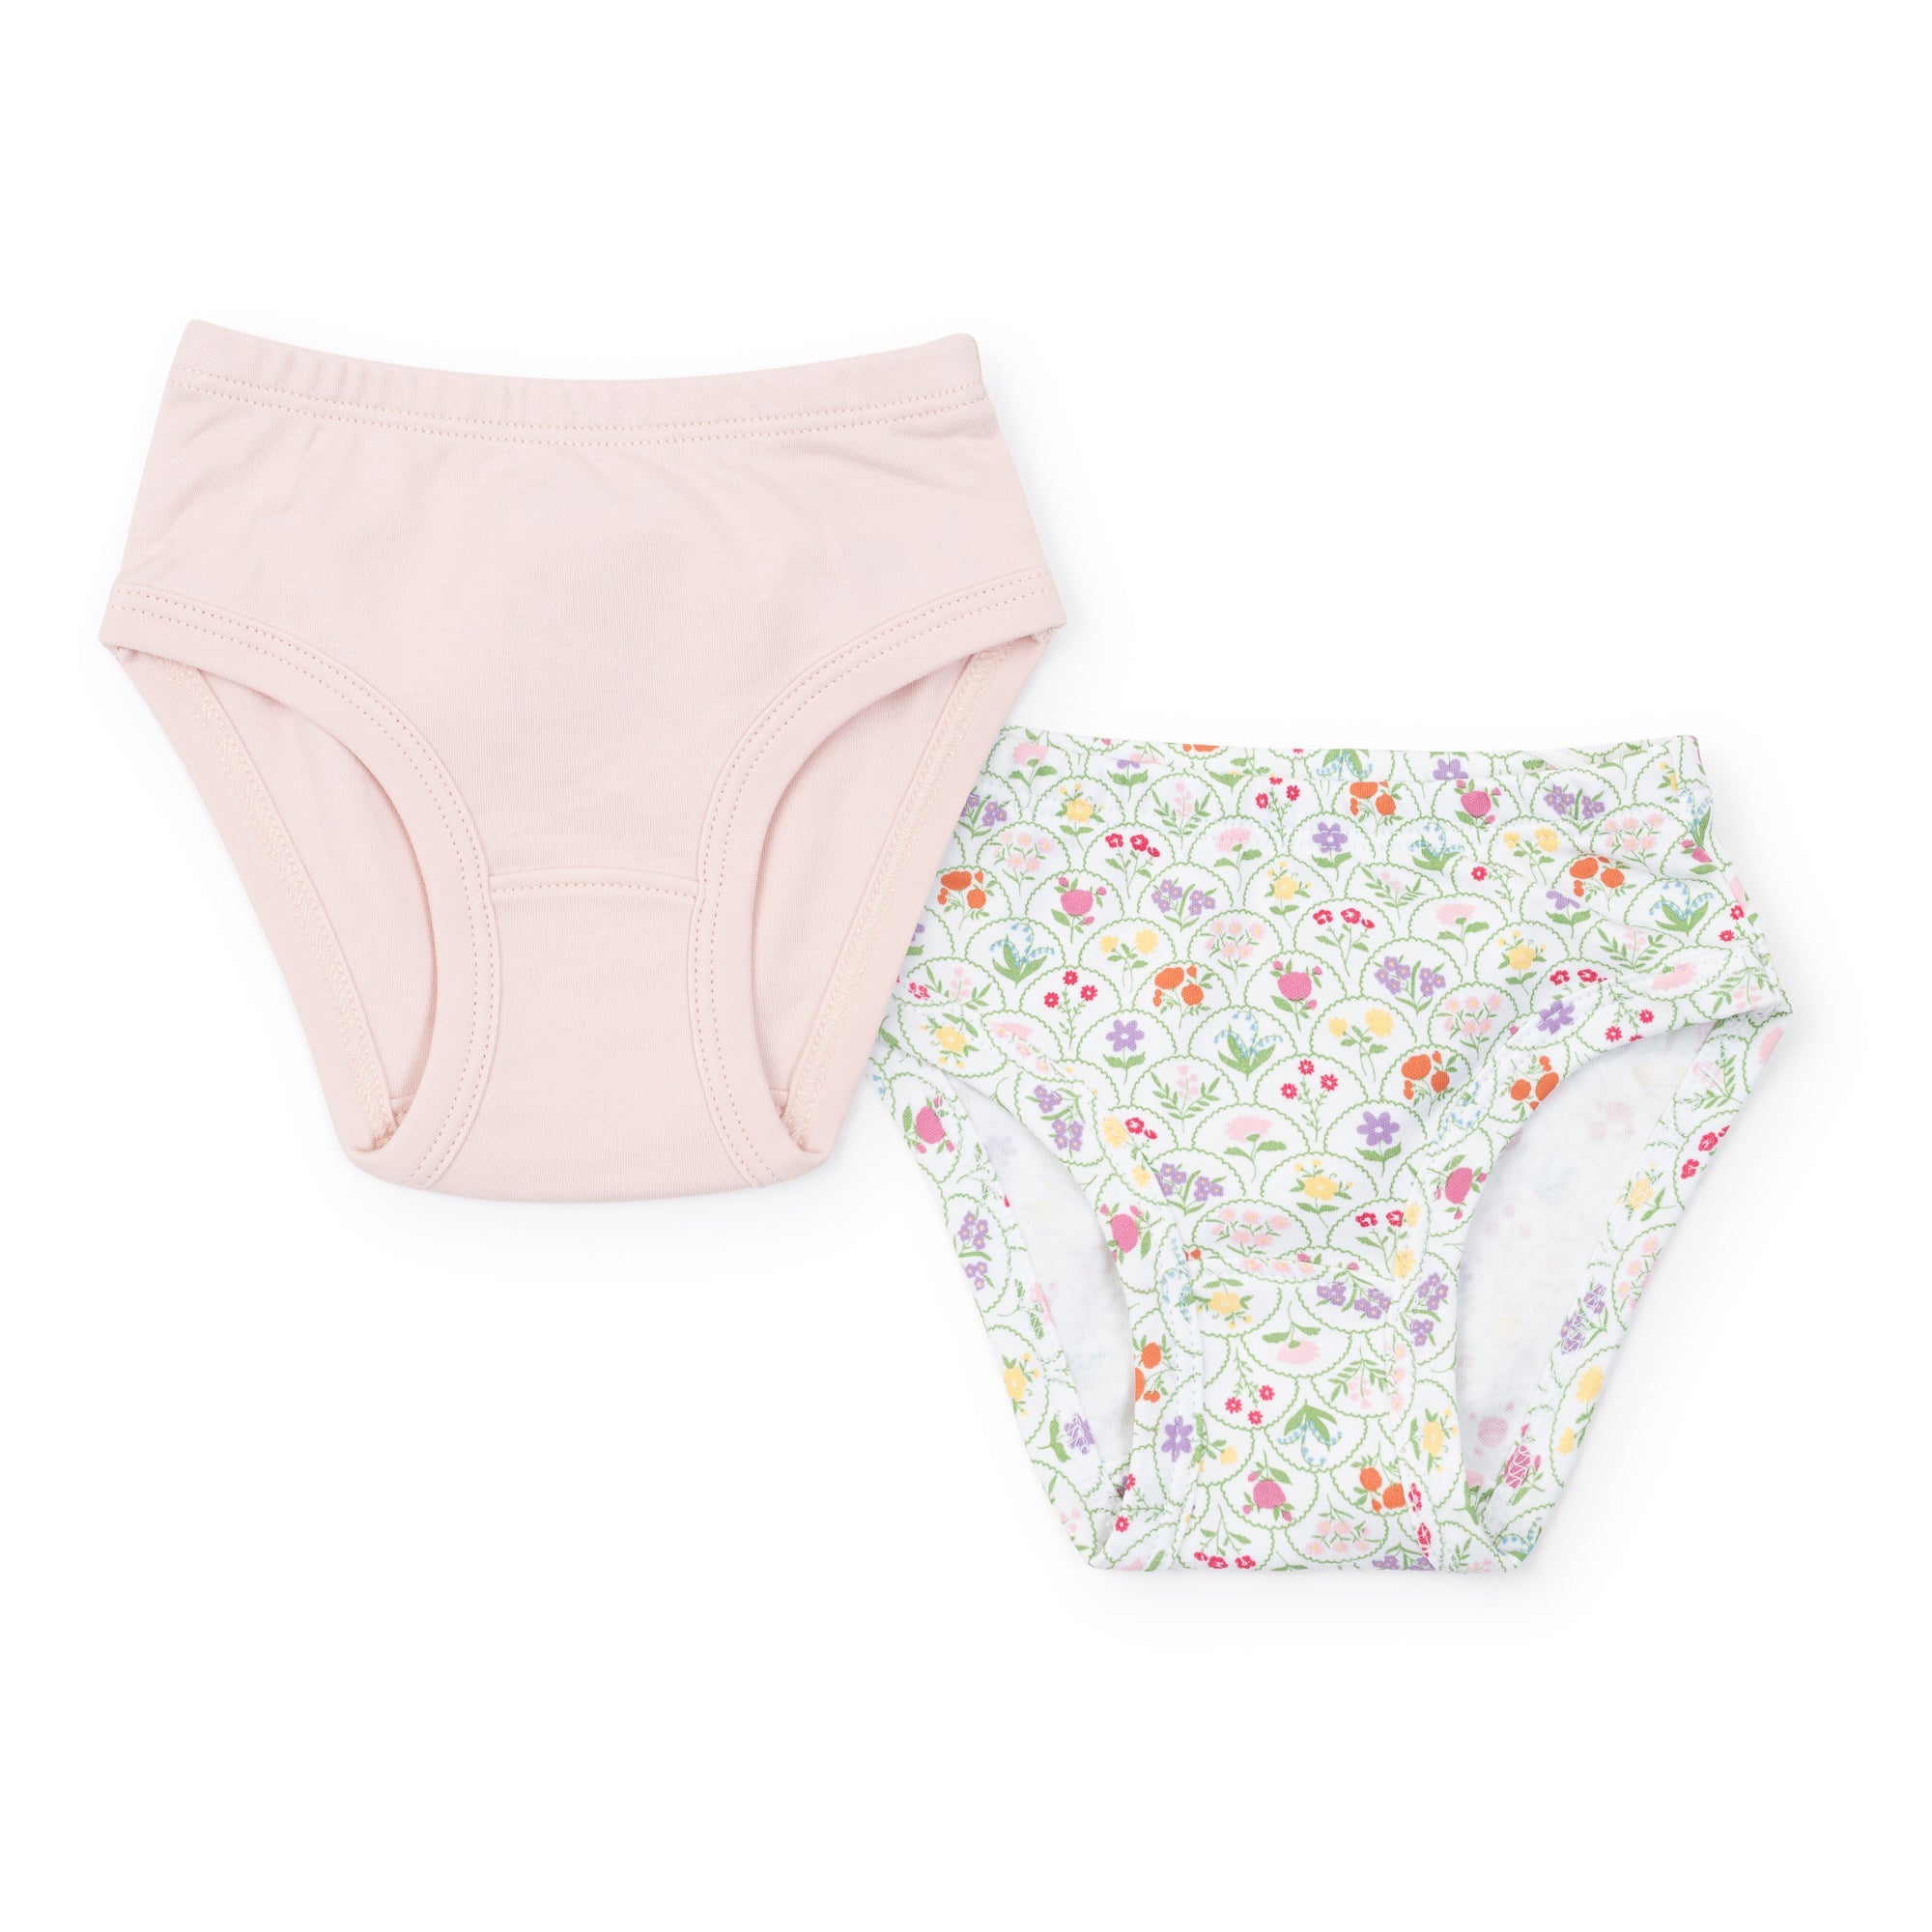 Lauren Girls' Pima Cotton Underwear Set - Garden Floral/light Pink